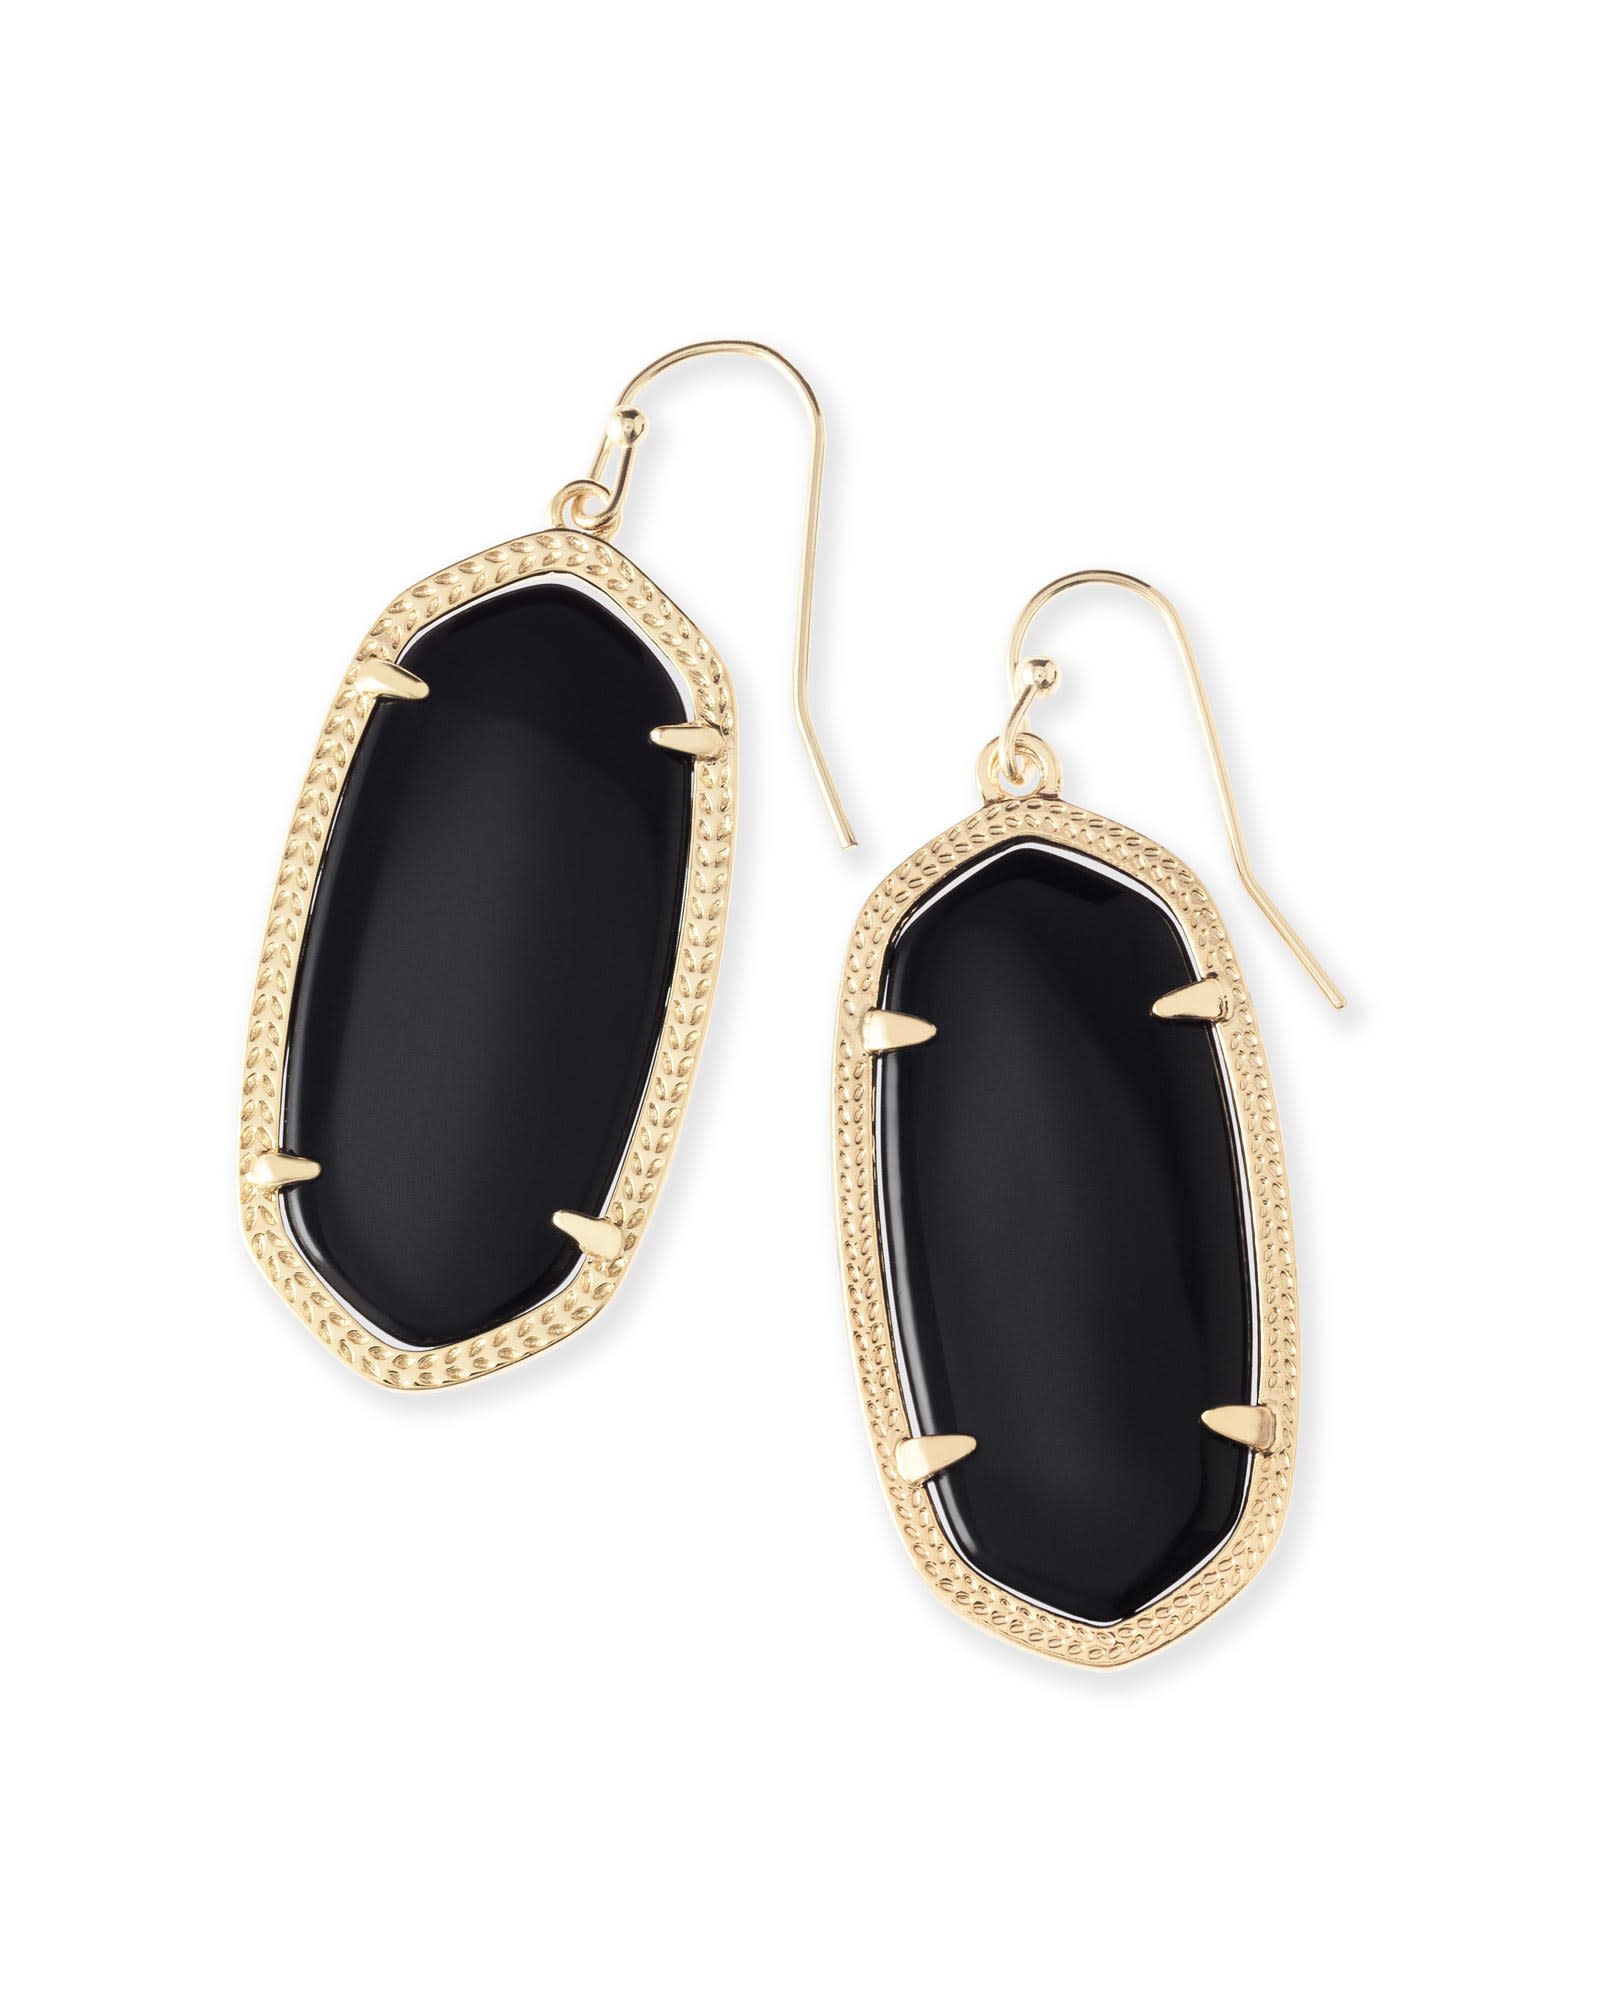 Elle Gold Drop Earrings in Black Opaque Glass